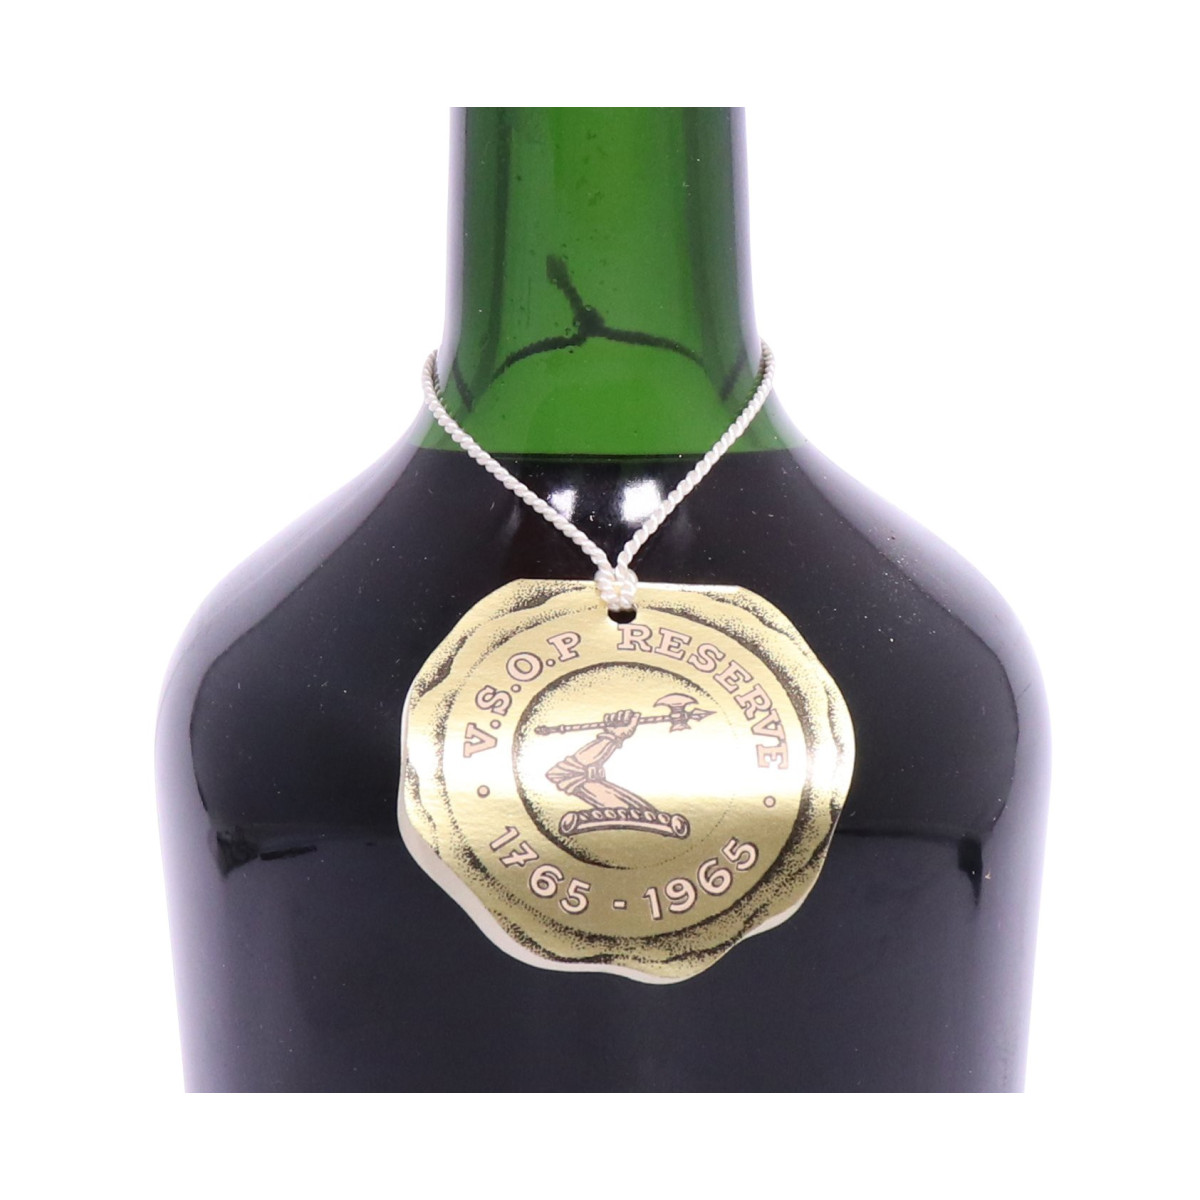 Hennessy Cognac VSOP Réserve 1765-1965 Edition